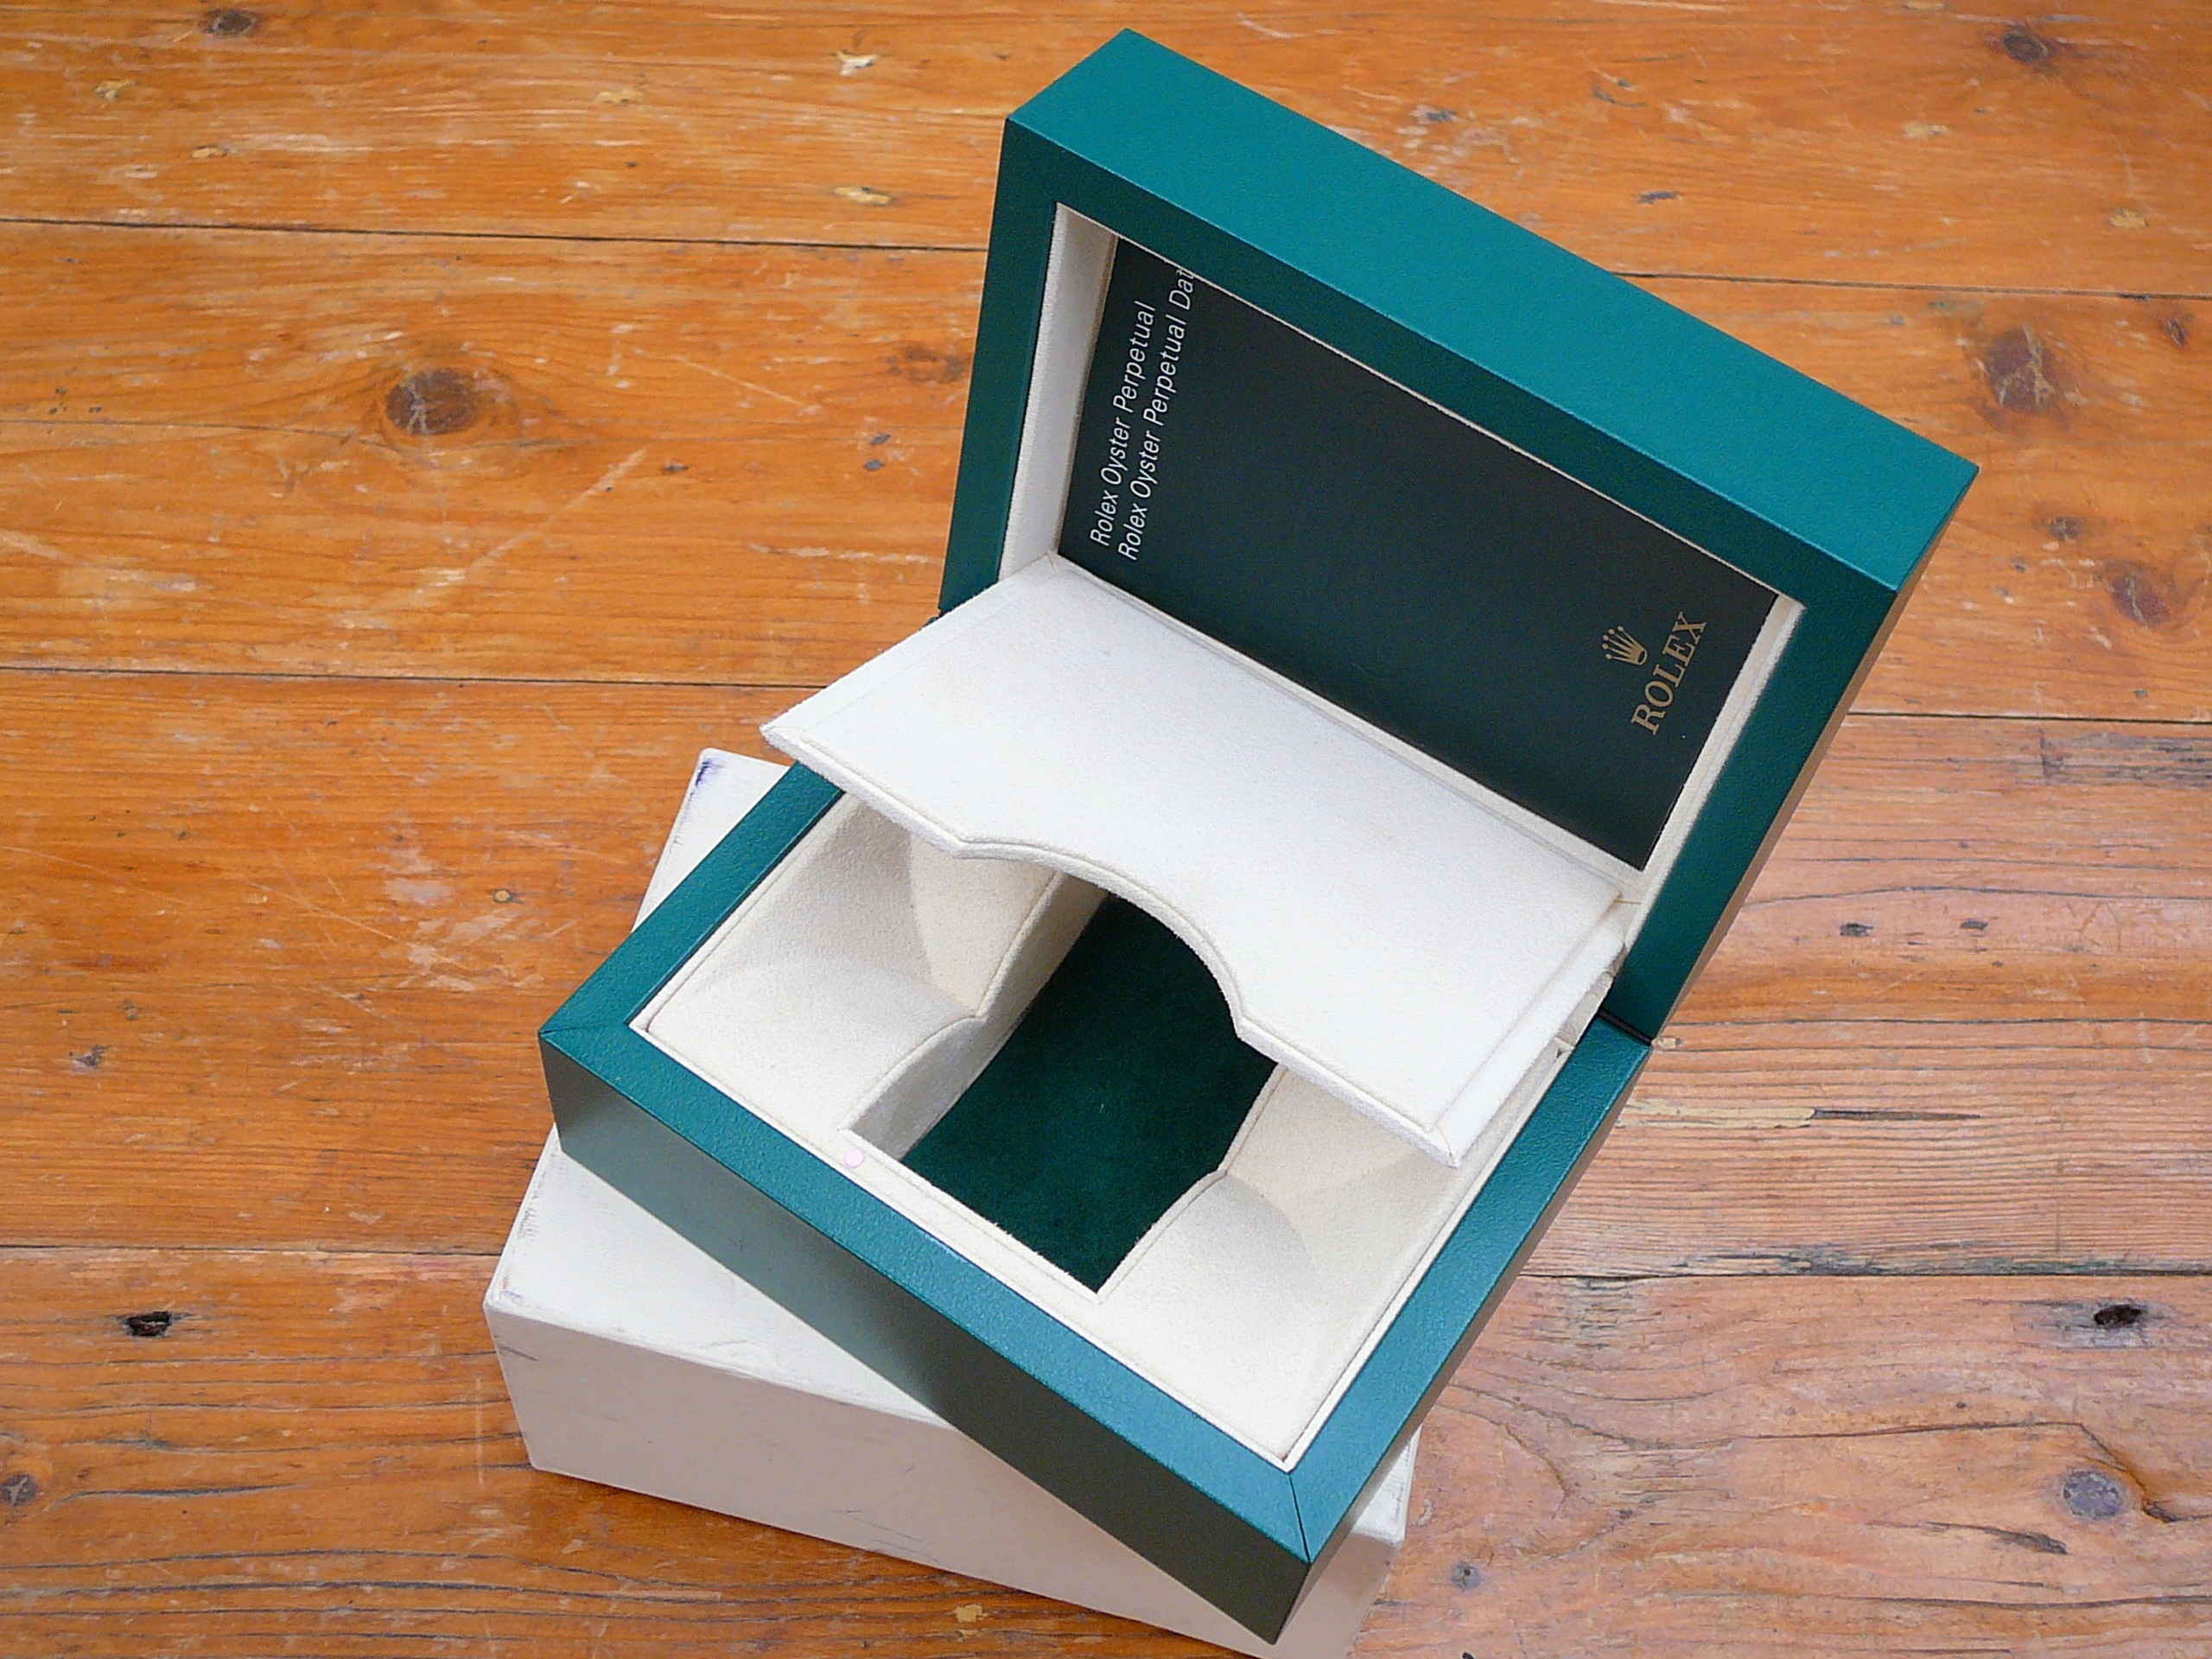 Rolex watch box